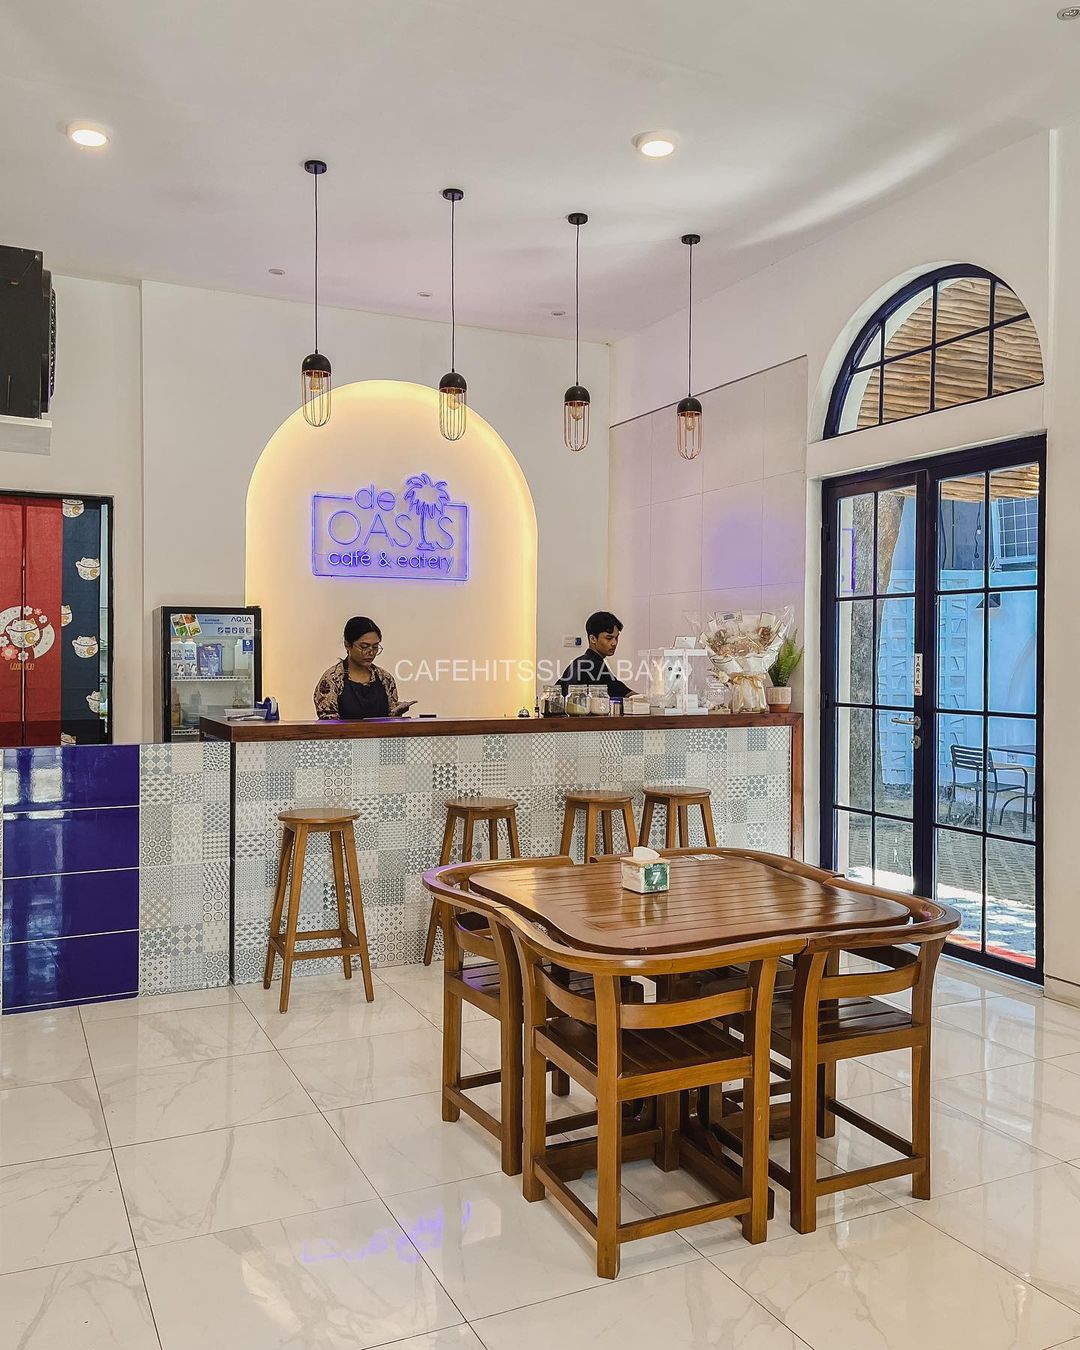 Jam Buka De Oasis Cafe Eatery Surabaya Image From @cafehitssurabaya